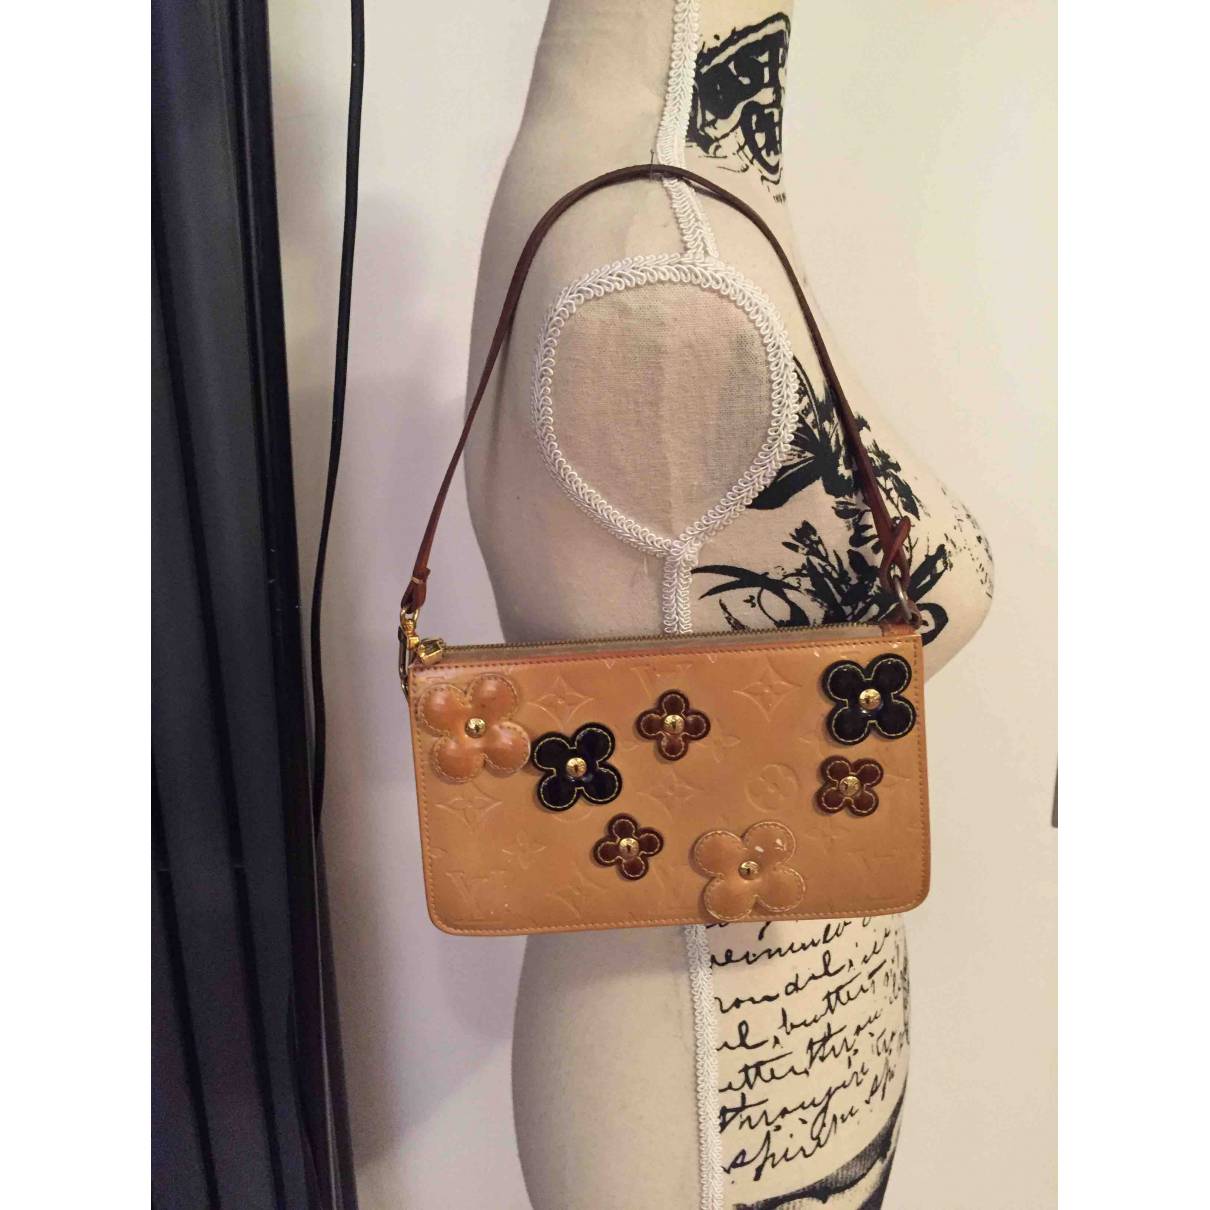 Louis Vuitton - Authenticated Lexington Handbag - Patent Leather Beige Floral for Women, Good Condition